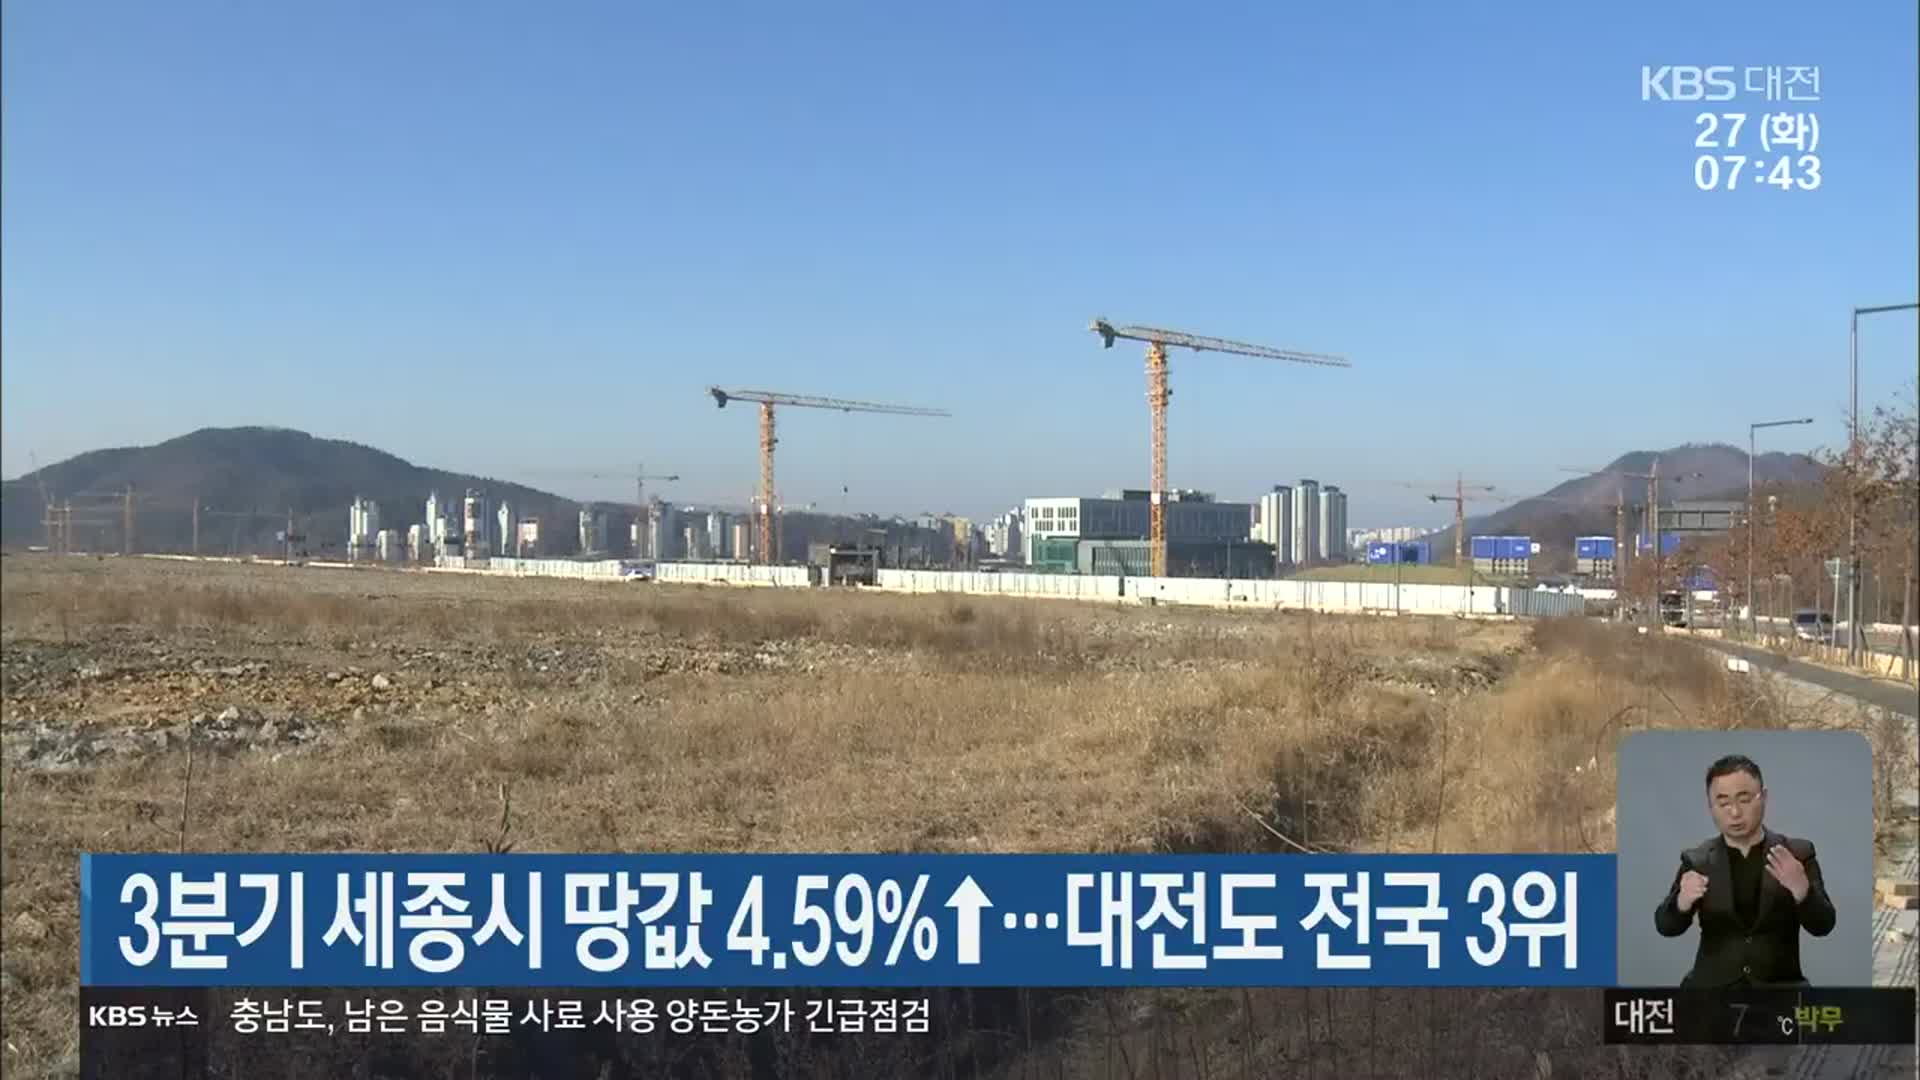 3분기 세종시 땅값 4.59%↑…대전도 전국 3위